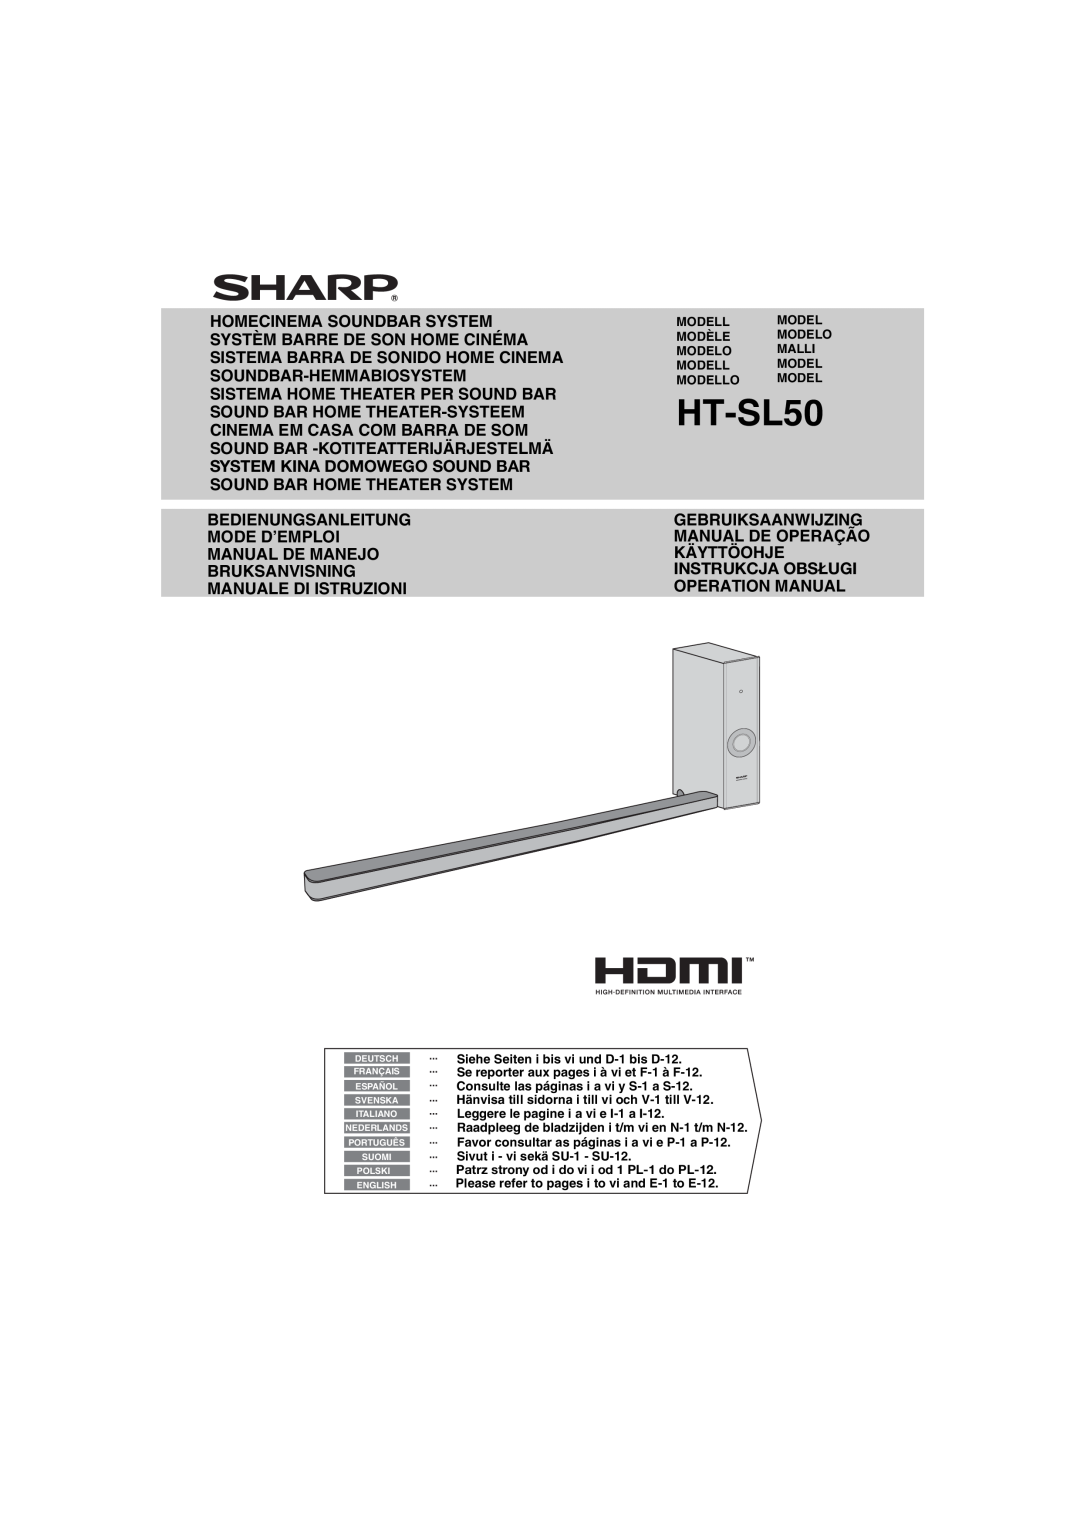 Sharp HT-SL50 operation manual System Kina Domowego Sound Bar, Instrukcja Obsługi 